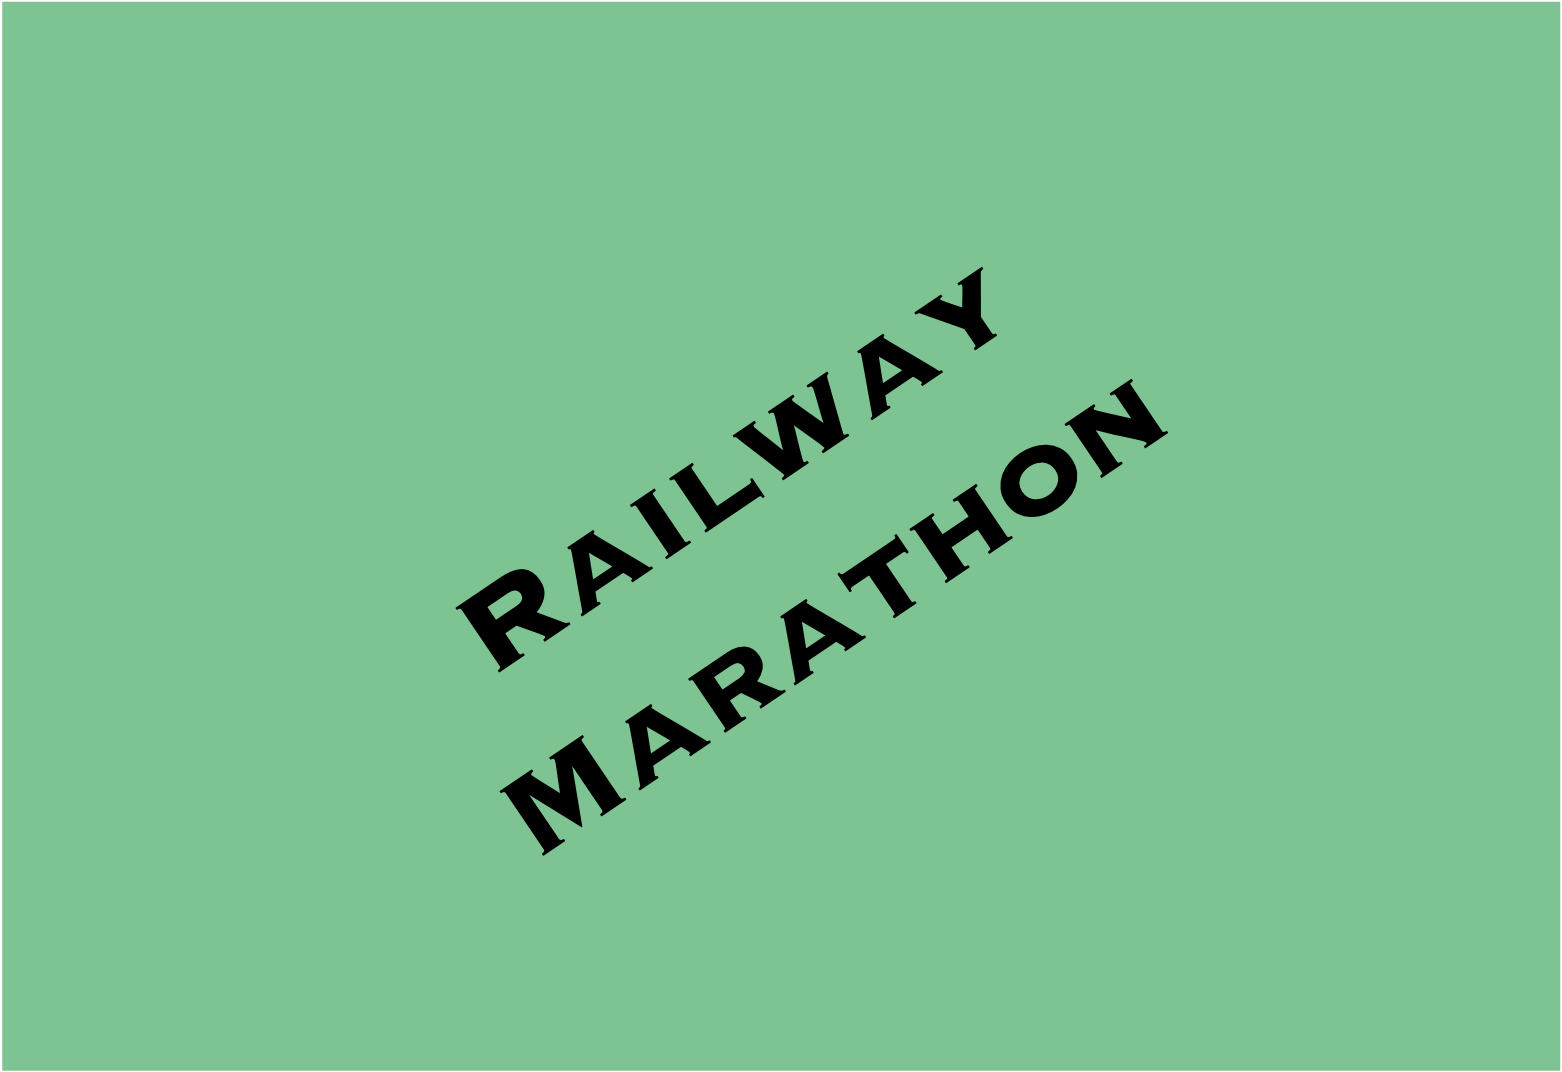 Railway Marathon - Birmingham Track Club